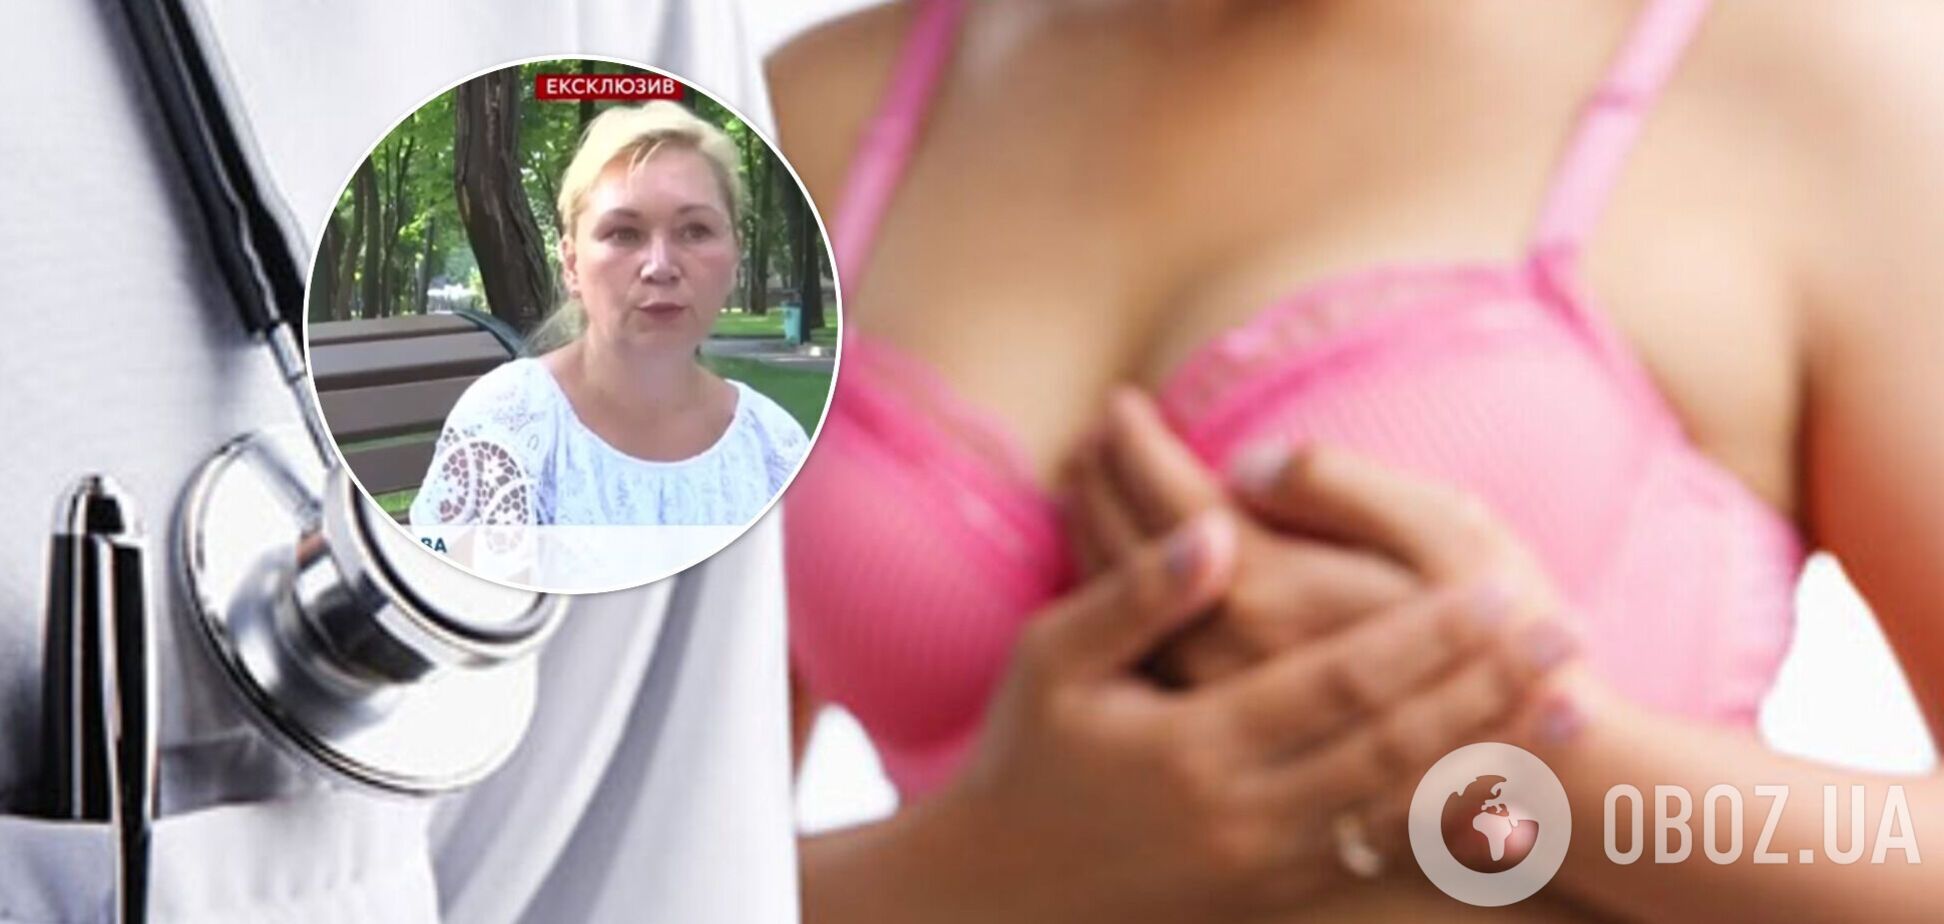 В Харькове пациентке ампутировали грудь без ее согласия: женщина требует компенсации в 5 млн грн